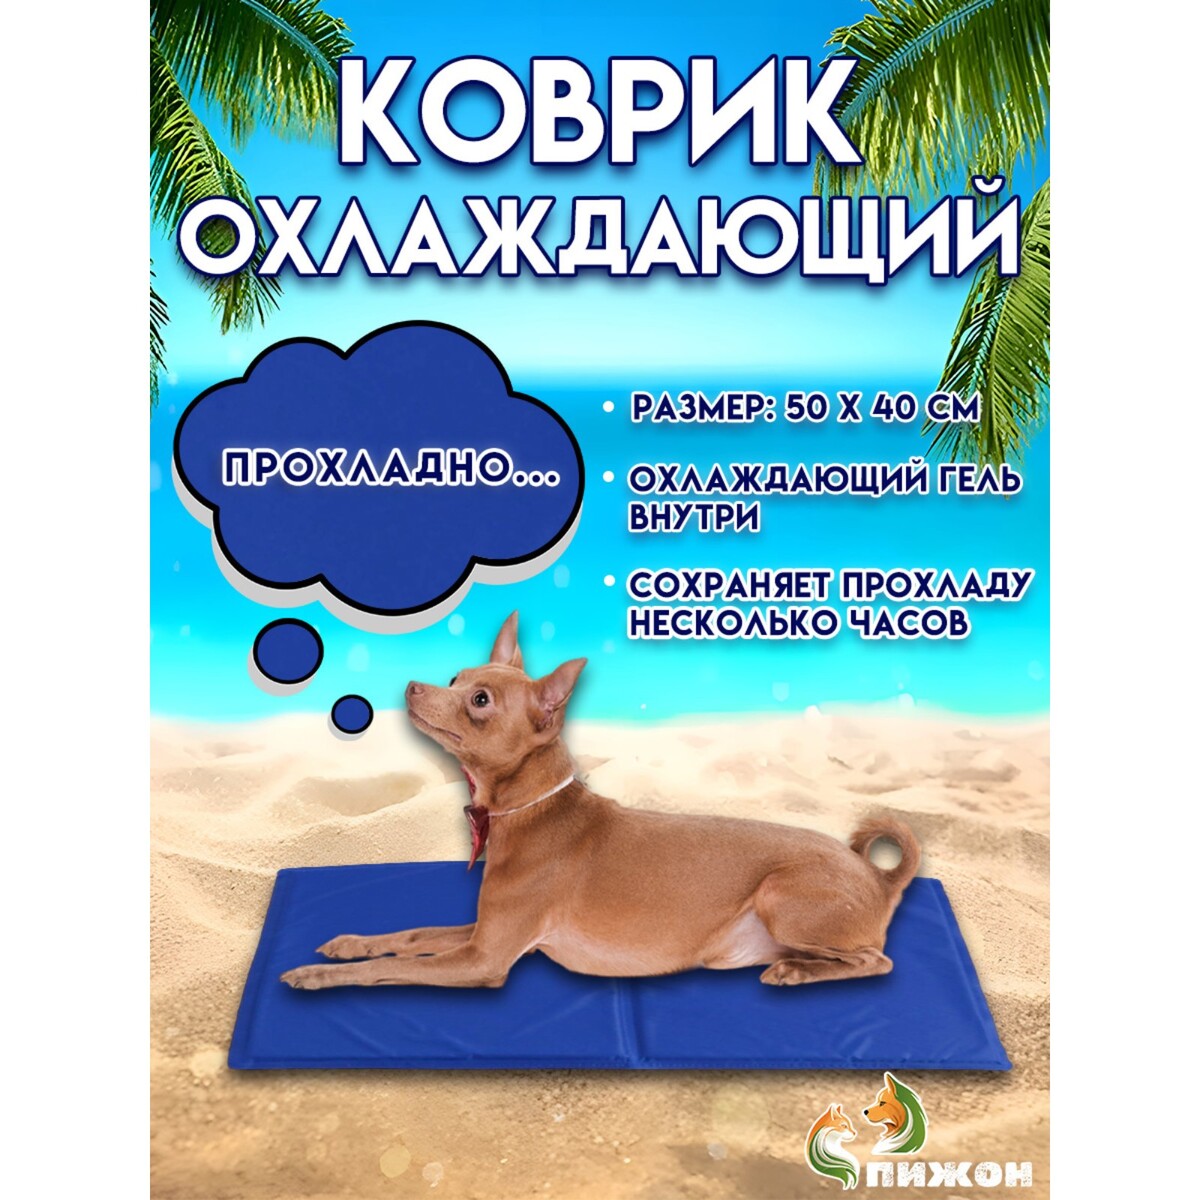 Коврик охлаждающий (гель+губка), 50 х 40 см, синий коврик для йоги inex yoga mat in rp ym35 bl 35 rp 170x60x0 35 синий